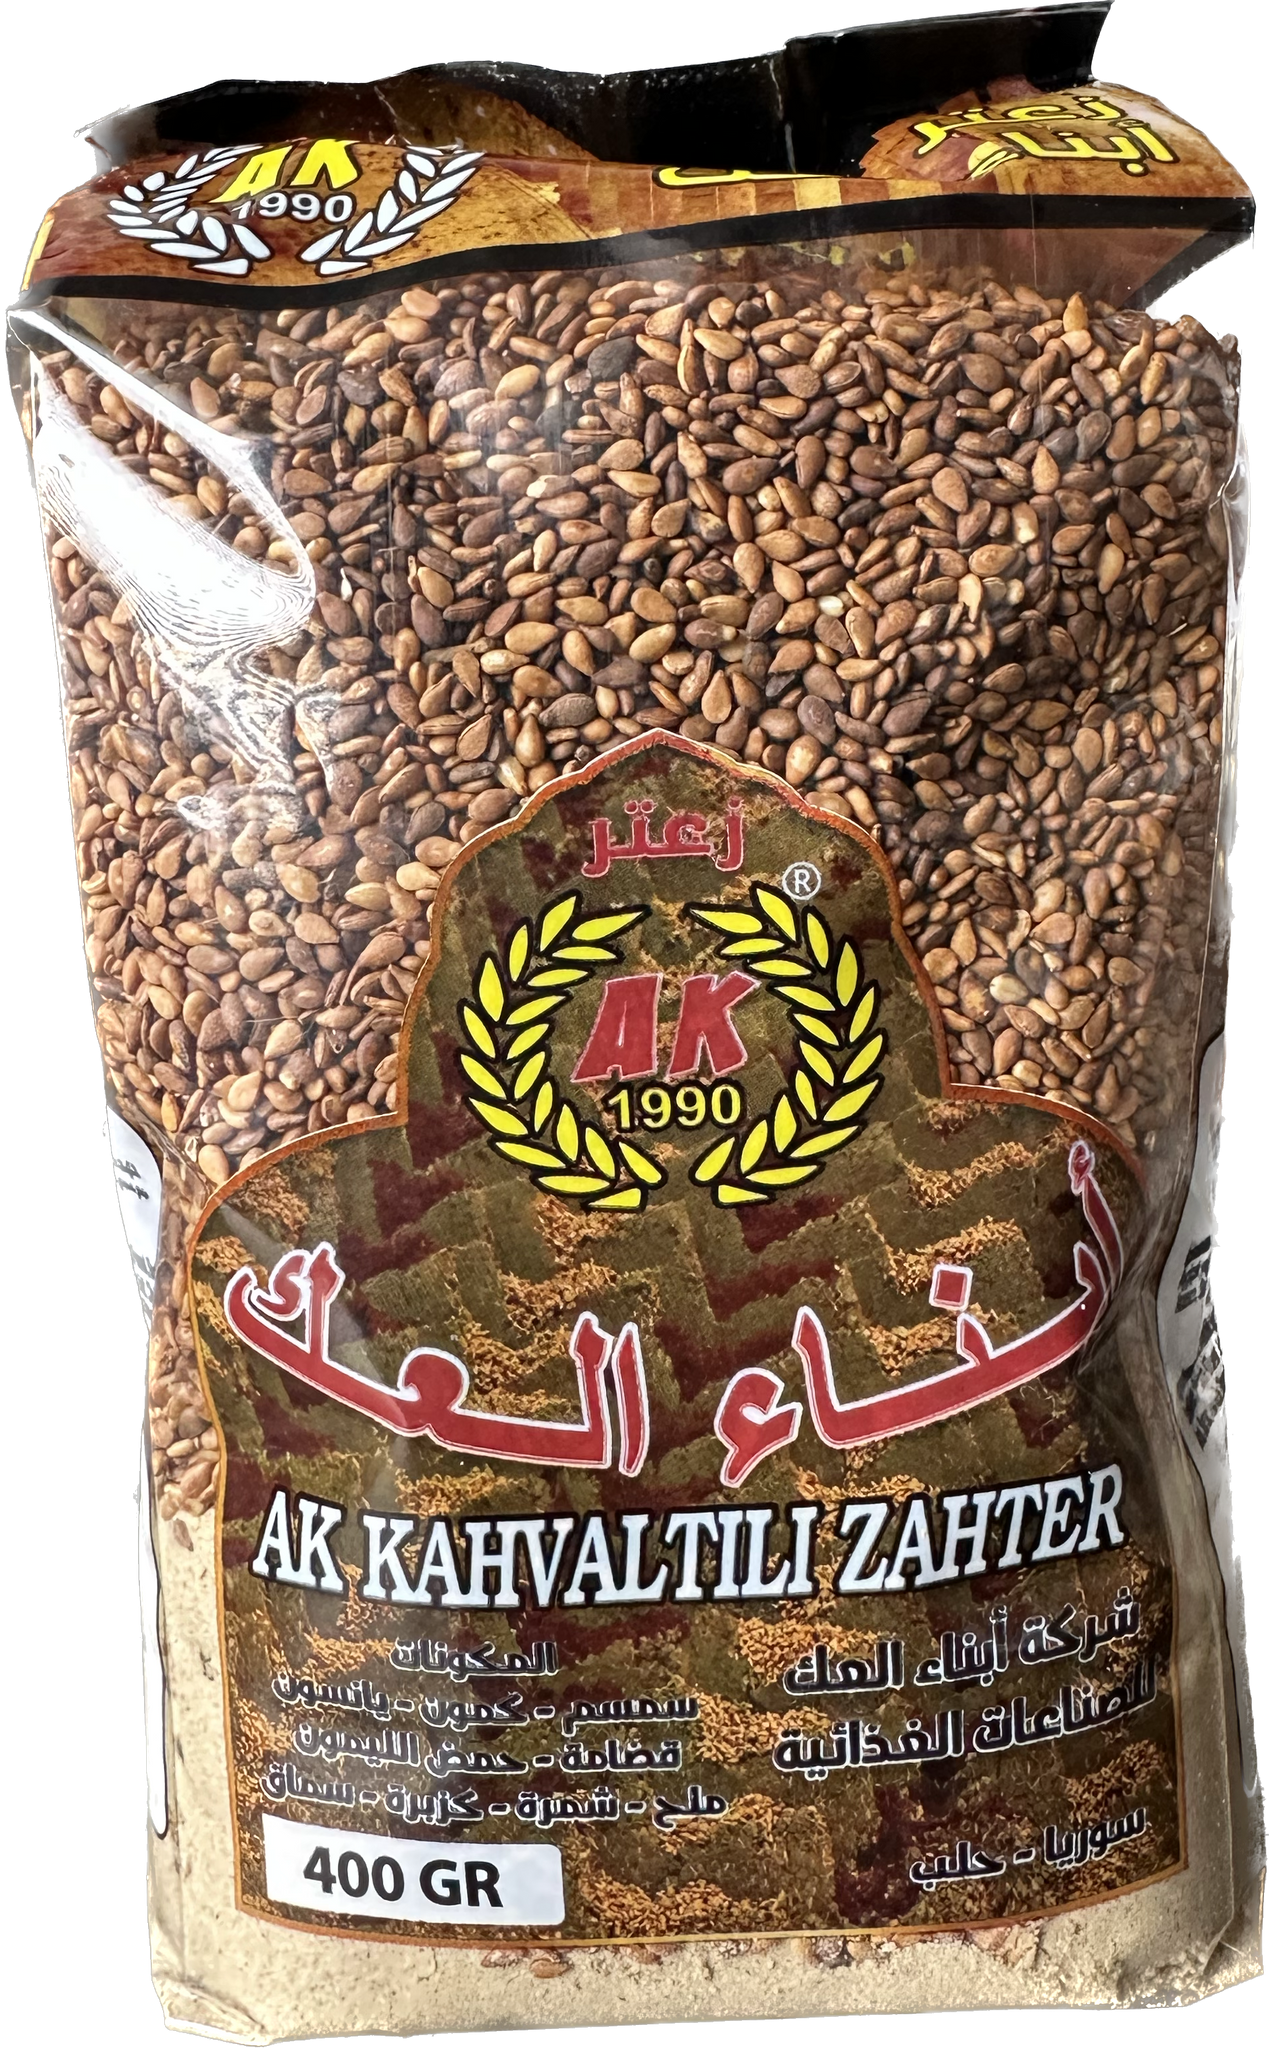 Ak Kahvaltili Palestinian Brown Zahter (400g)